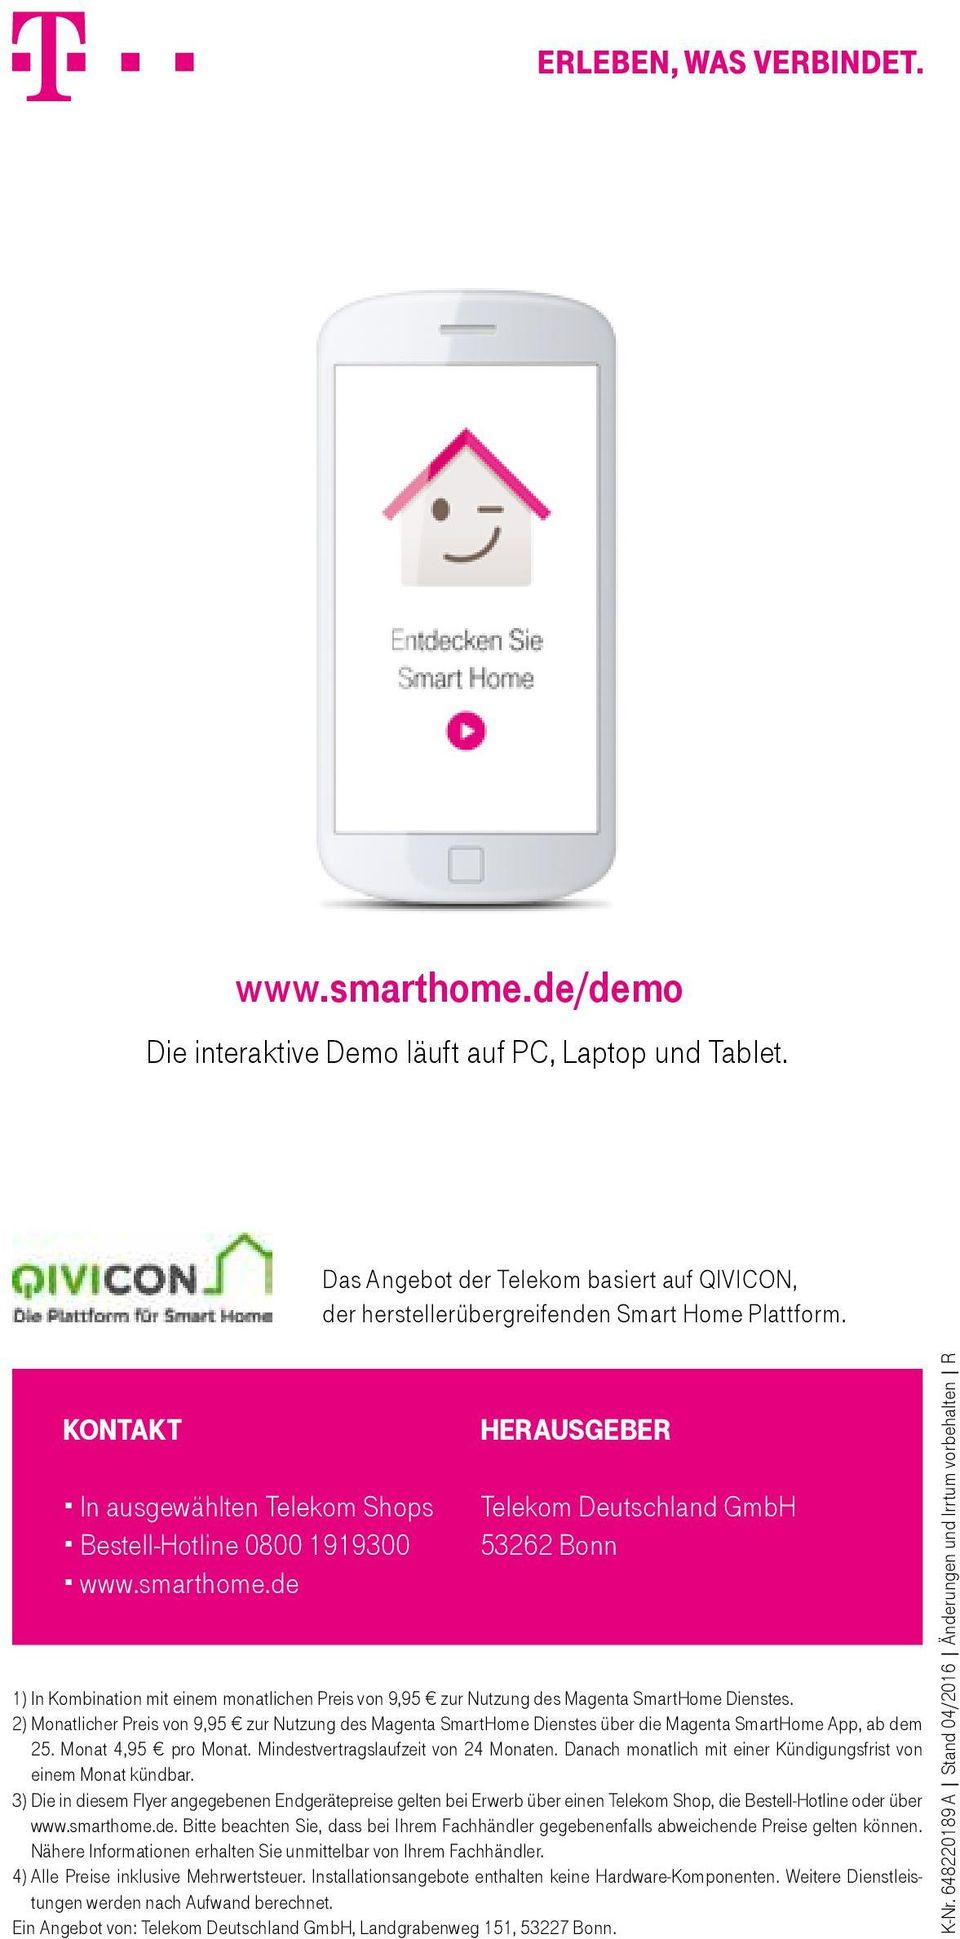 de Herausgeber Telekom Deutschland GmbH 53262 Bonn 1) In Kombination mit einem monatlichen Preis von 9,95 zur Nutzung des Magenta SmartHome Dienstes.